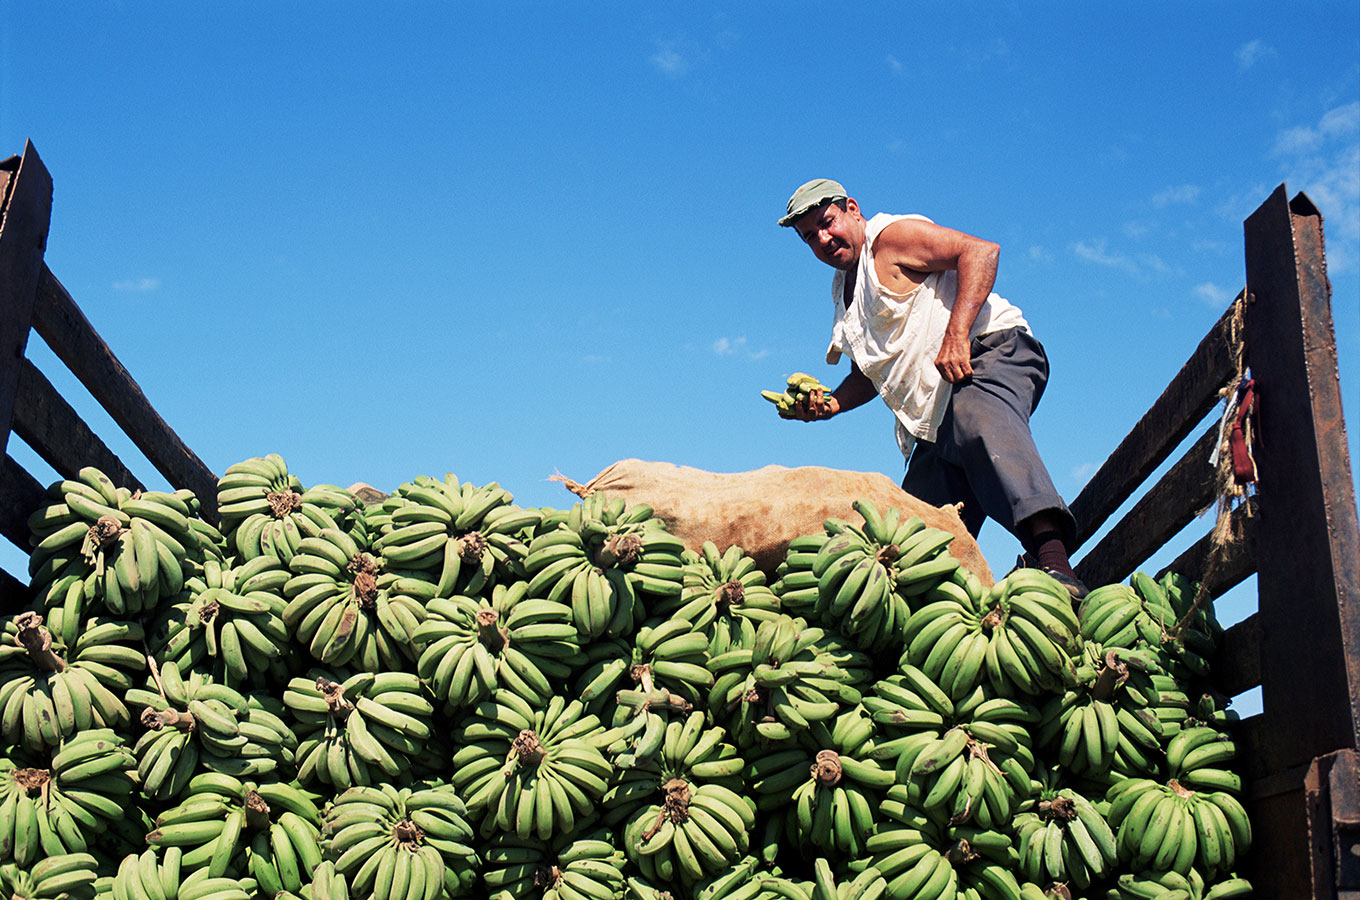 Как бразильский триатлонист подсадил американцев на снэки из некондиционных бананов